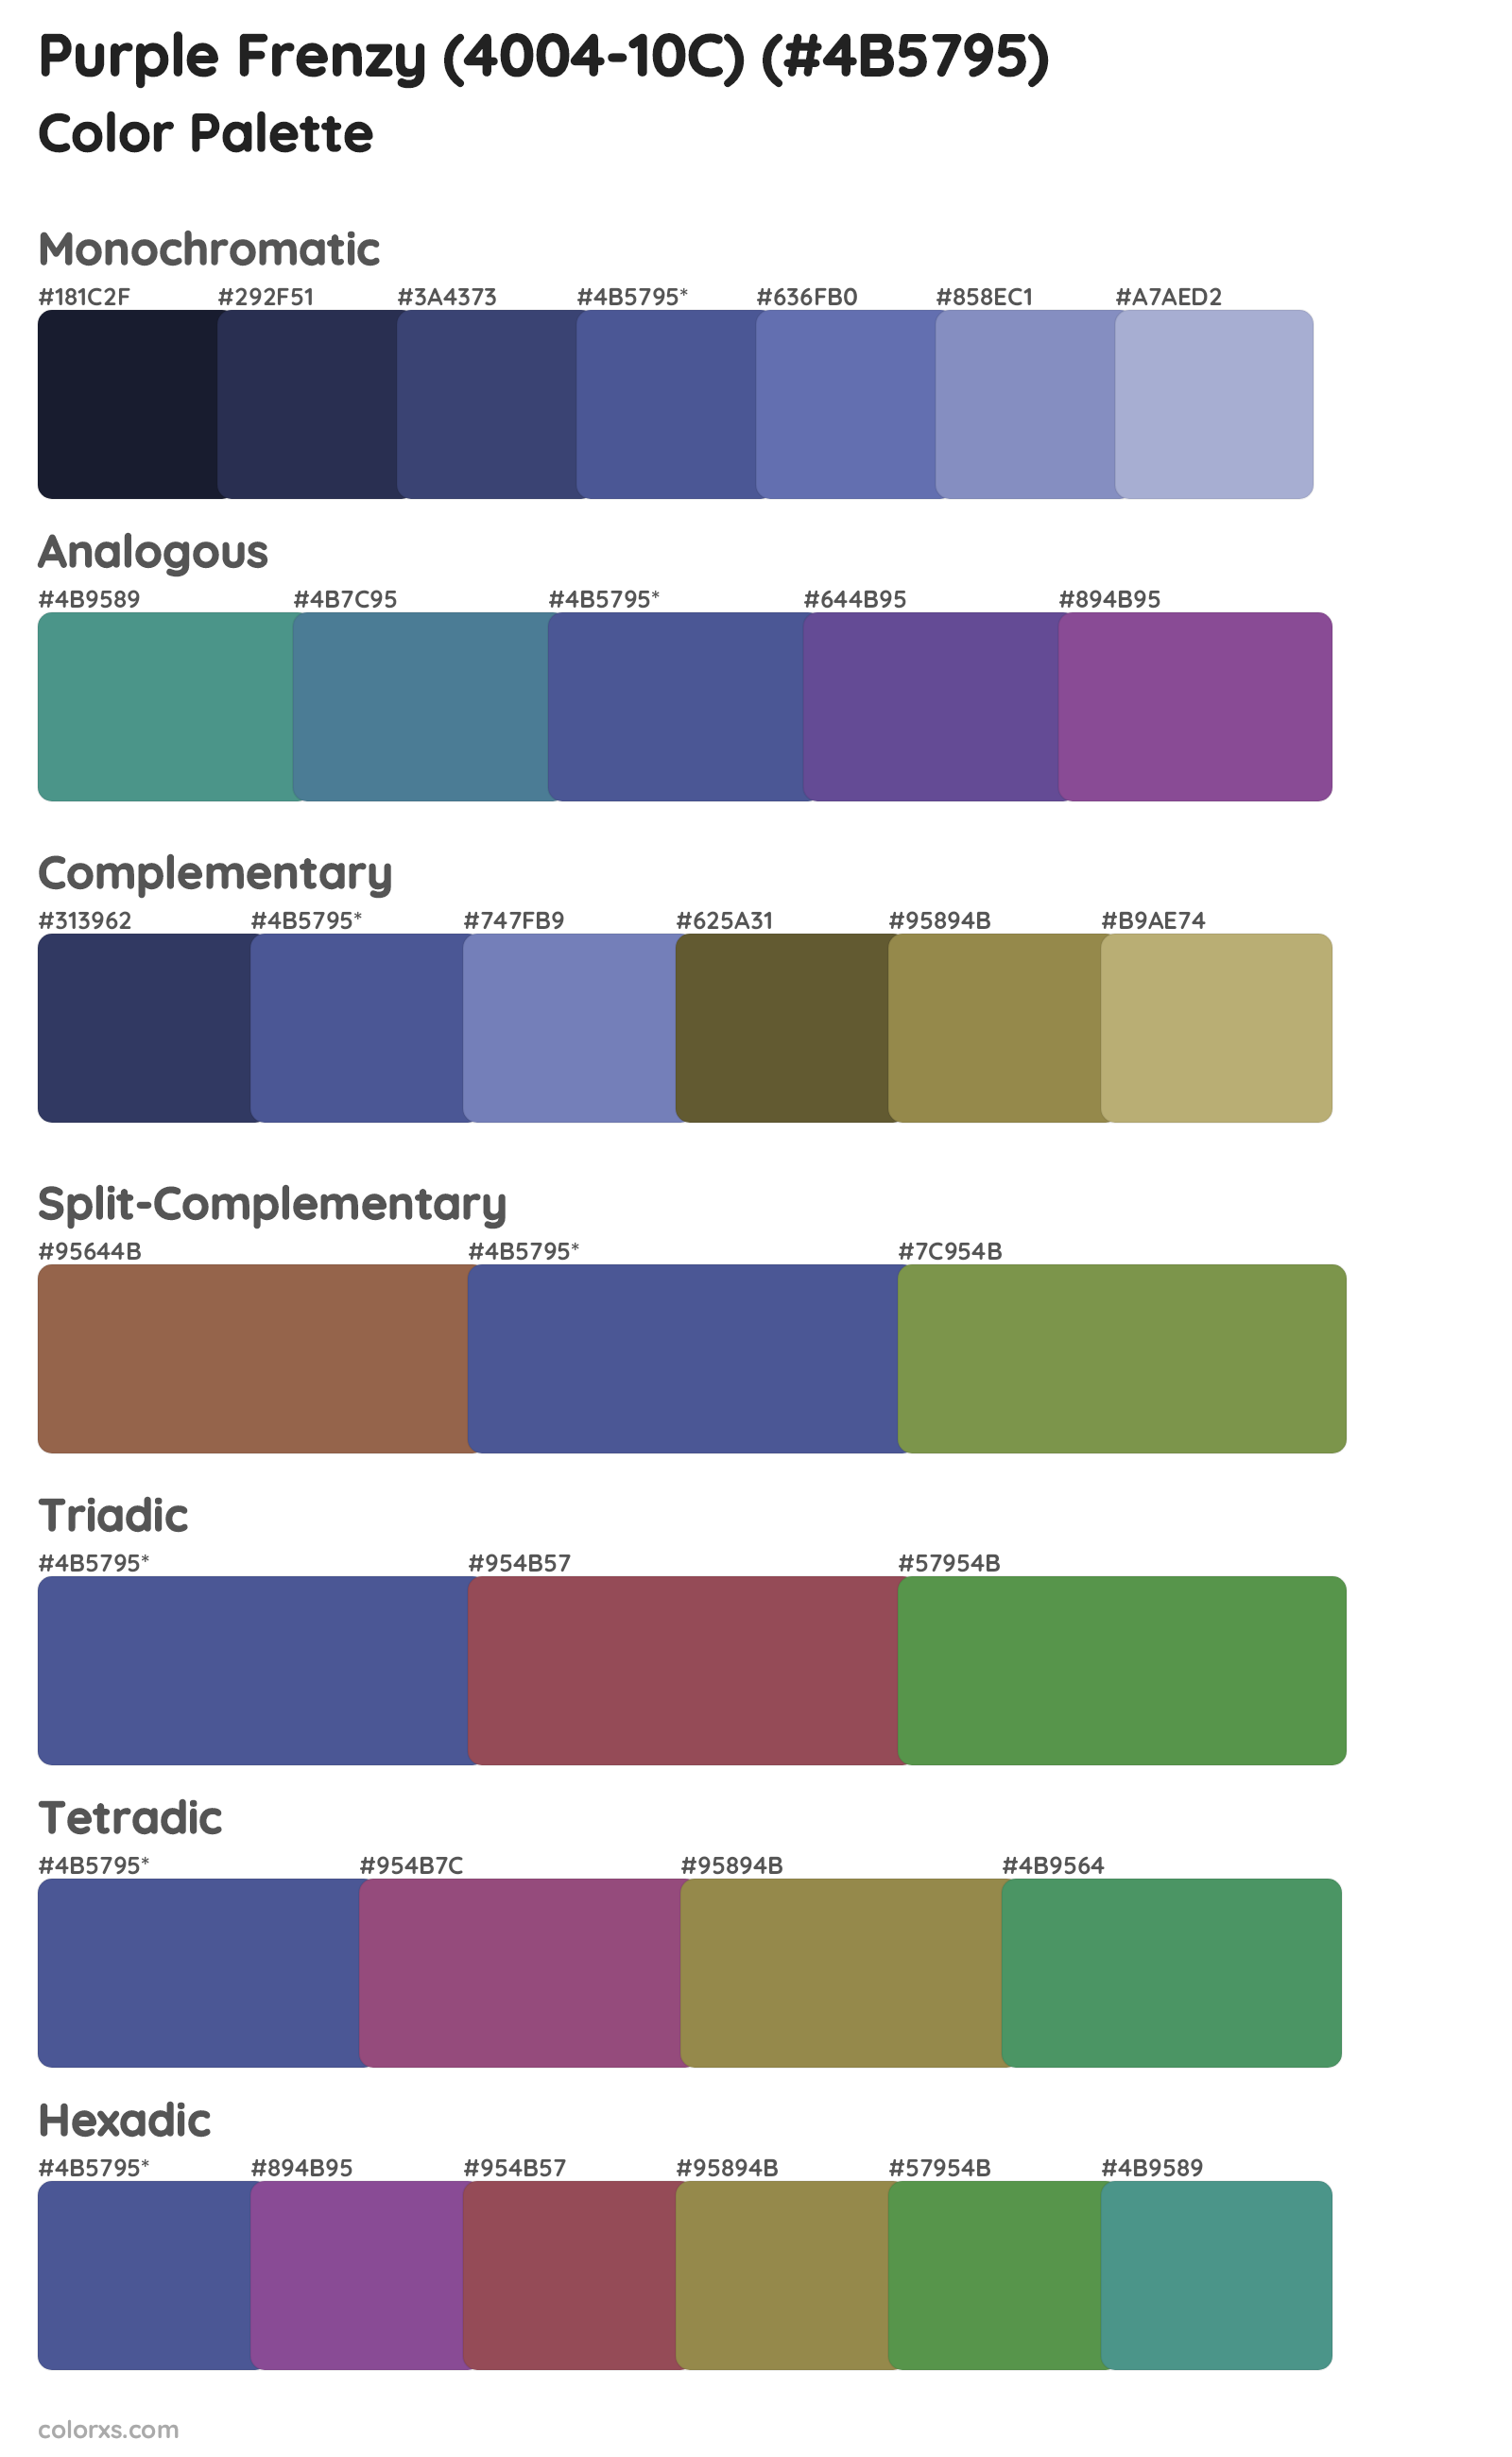 Purple Frenzy (4004-10C) Color Scheme Palettes